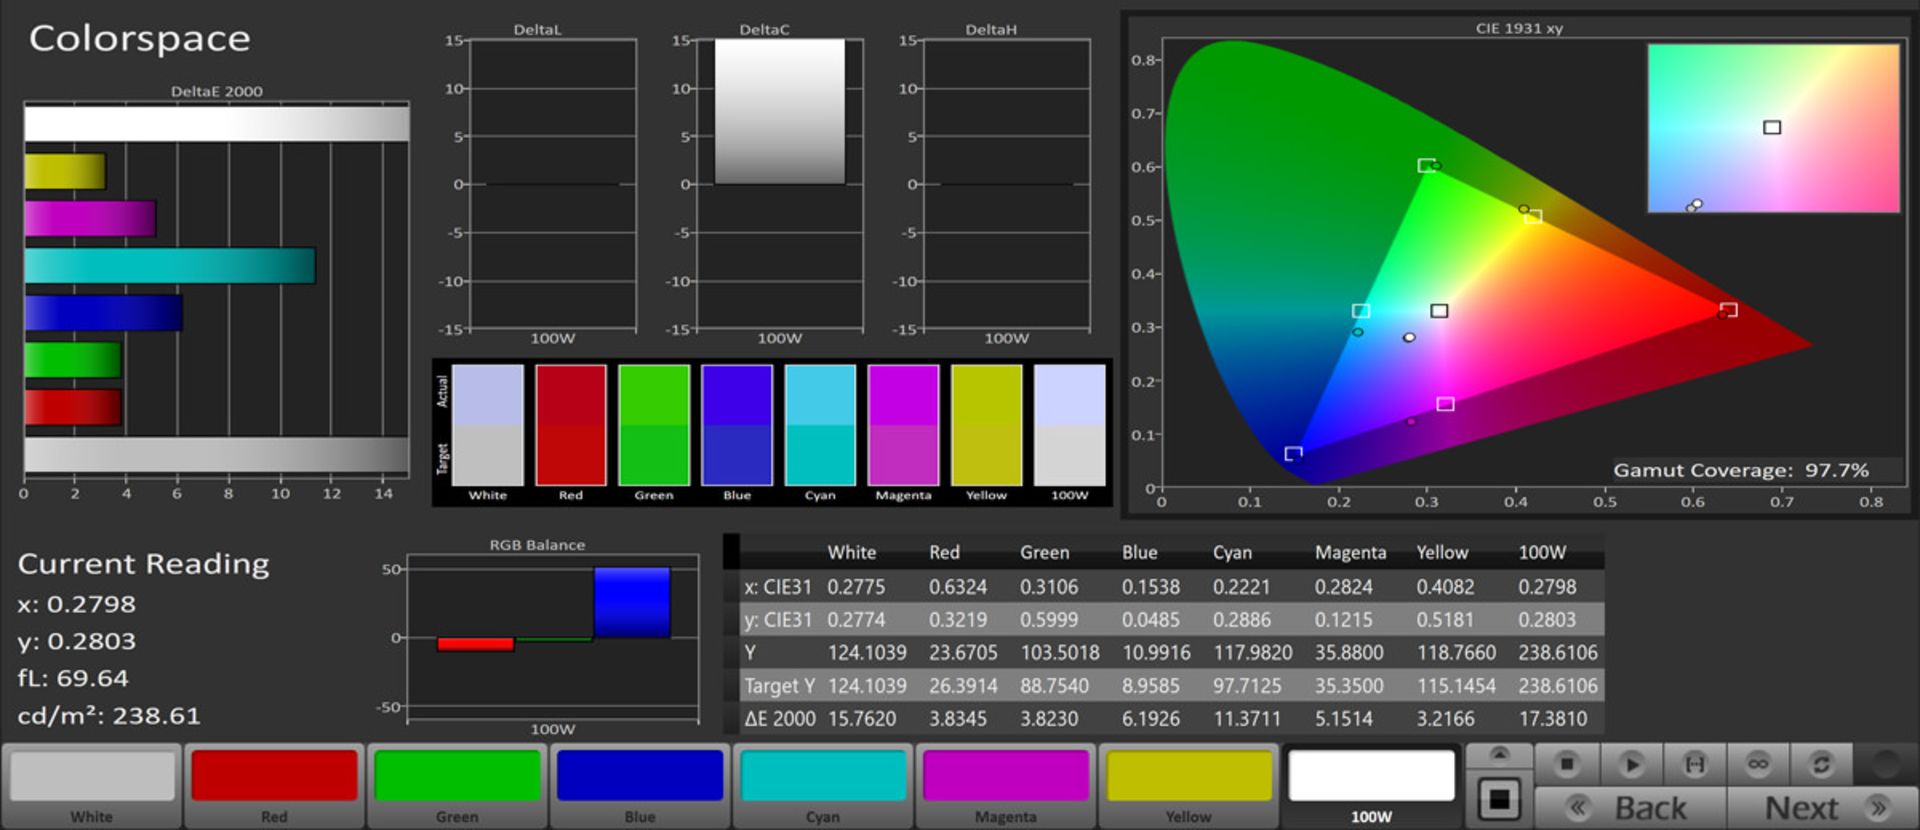 پوشش فضای رنگی sRGB در حالت Standard - تلویزیون Mi TV 4S 2019